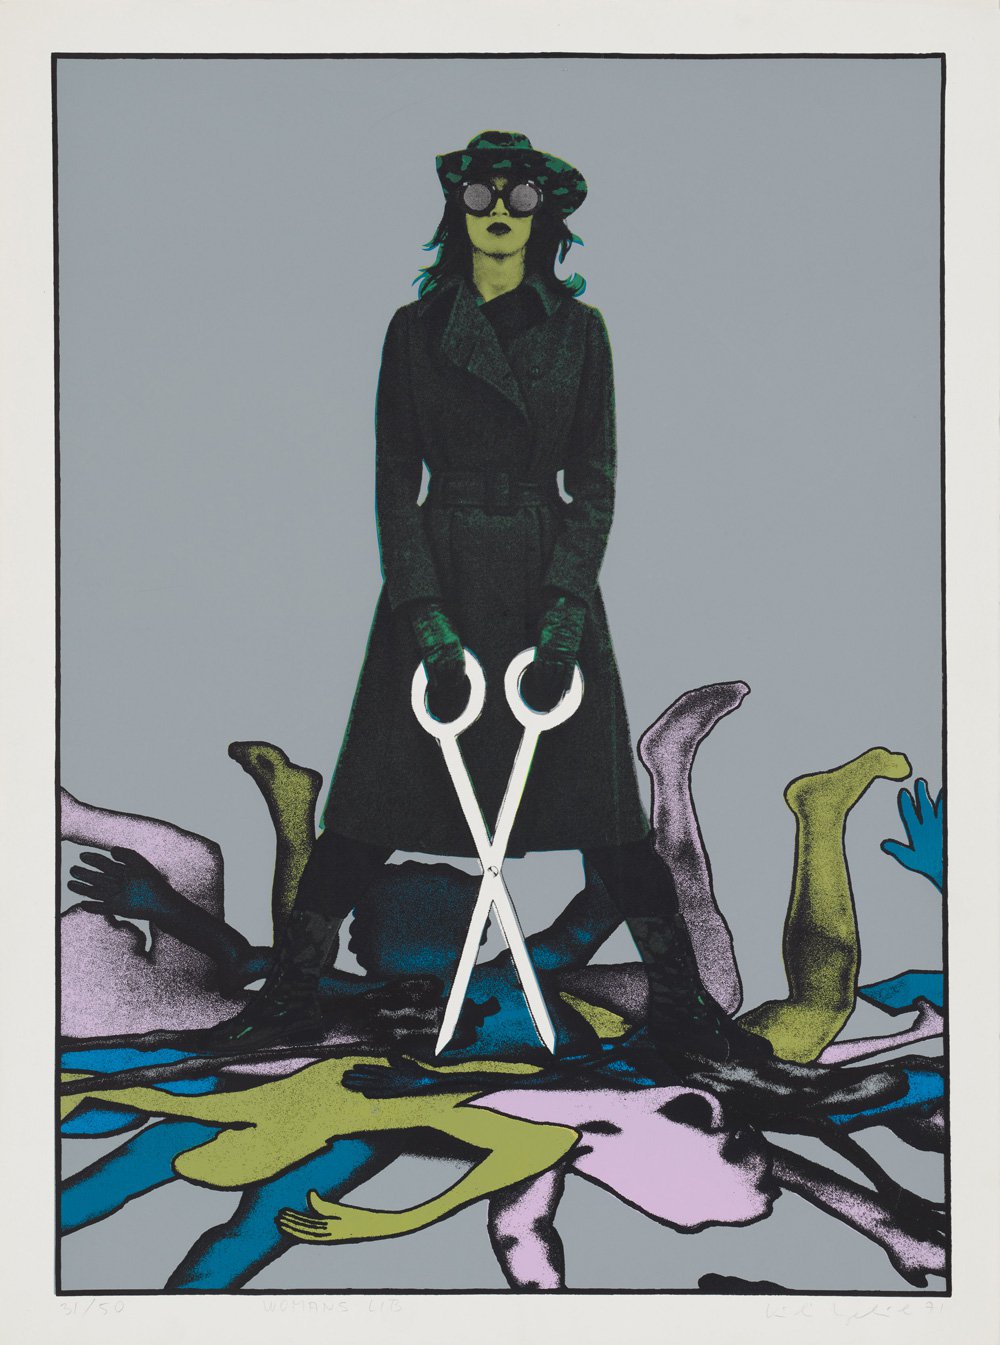 Kiki KogelnikWoman lib, 1971Silkscreen on paper76.1 x 56.7 cm